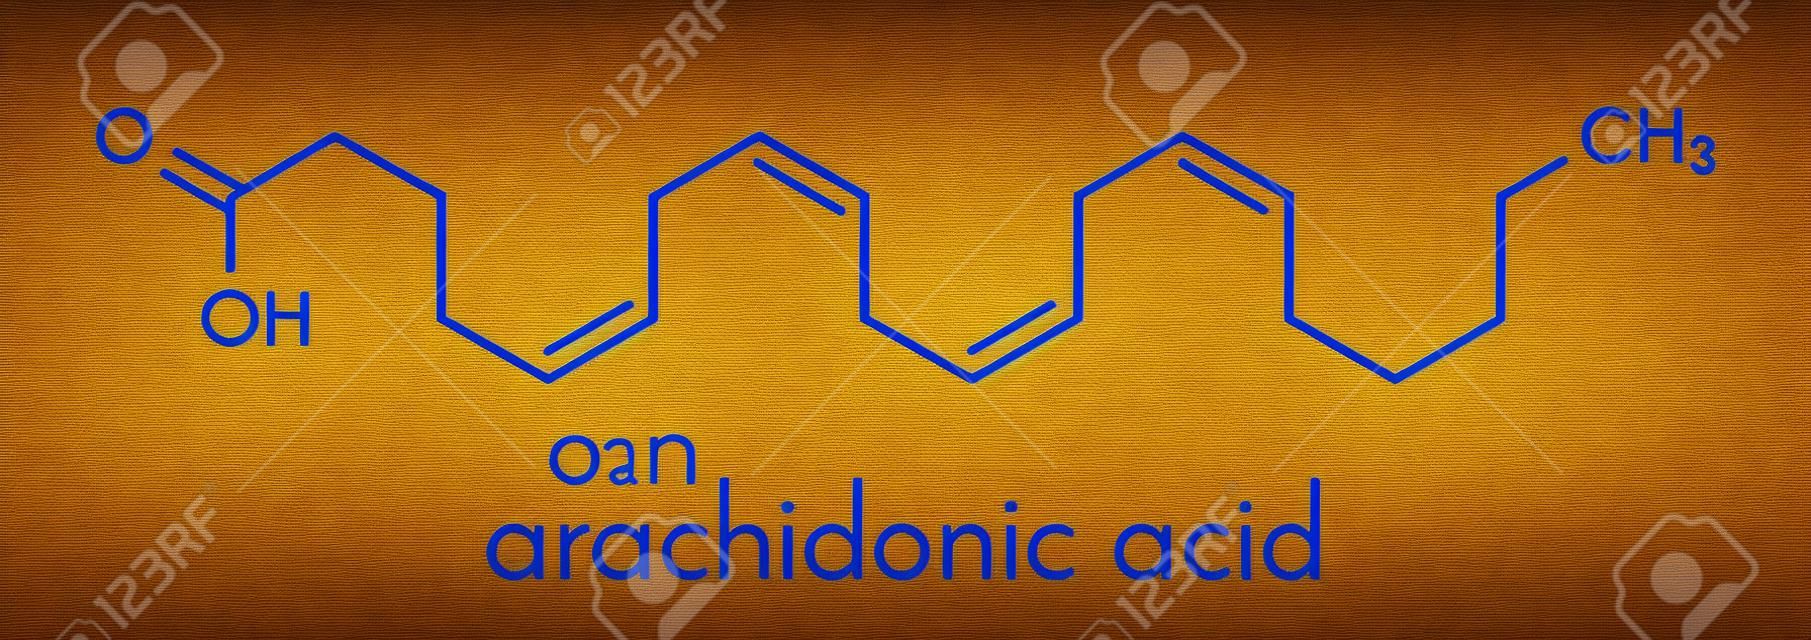 Molecola di acido arachidonico. Acido grasso omega-6 polinsaturo che è un precursore di prostaglandine, prostaciclina, trombossani, leucotrieni e anandamide. Formula scheletrica.